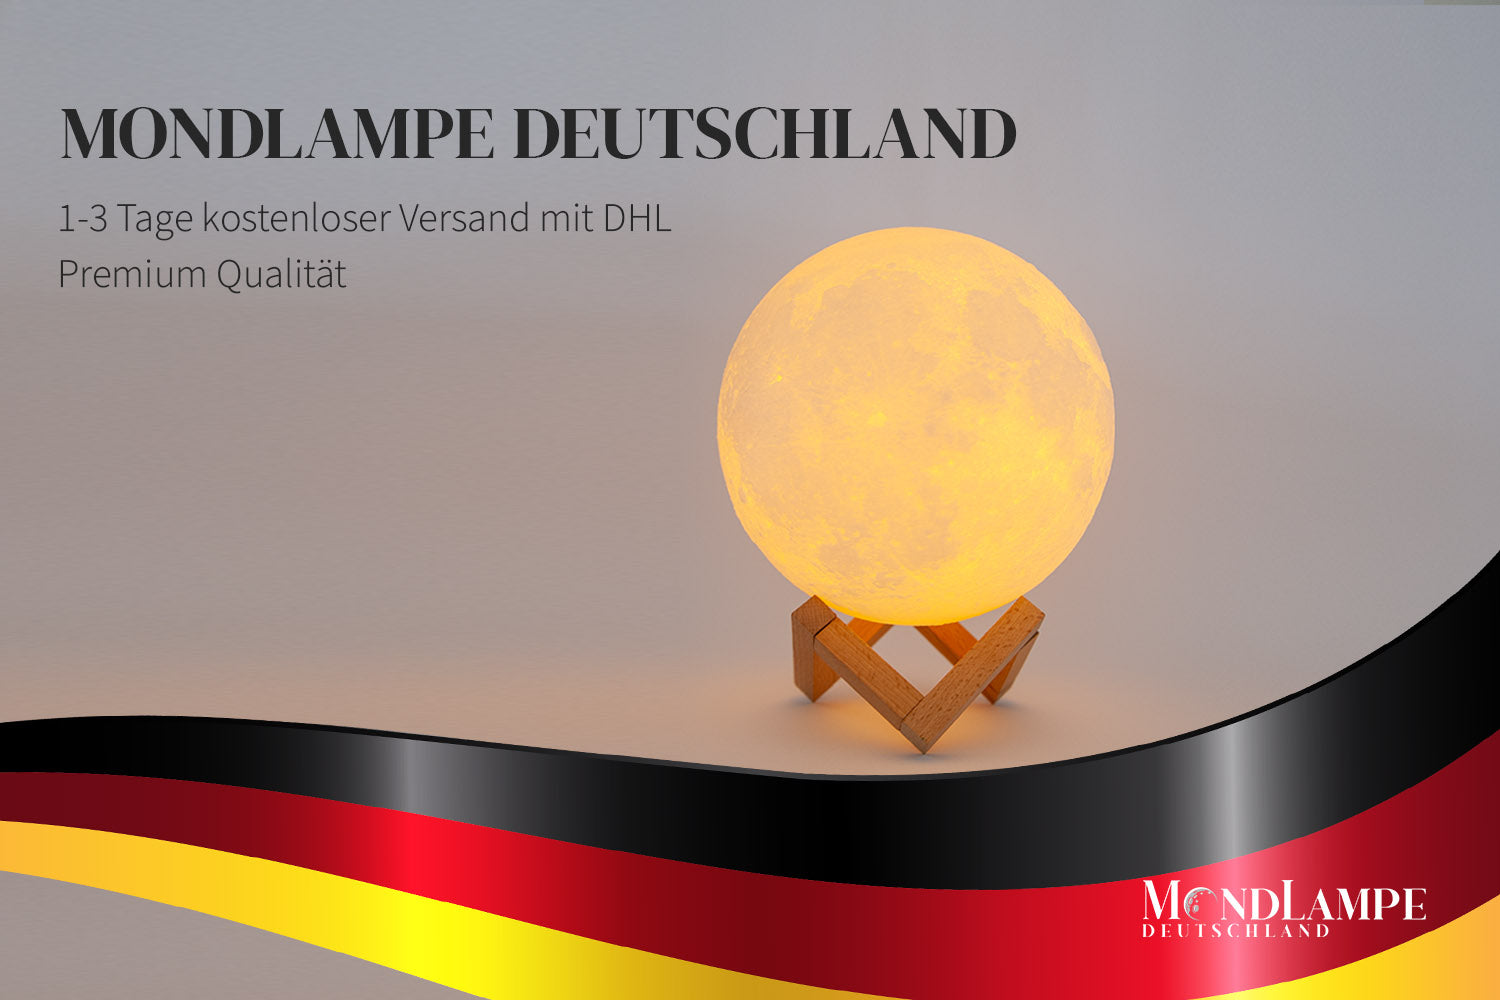 Mondlampe Deutschland online kaufen